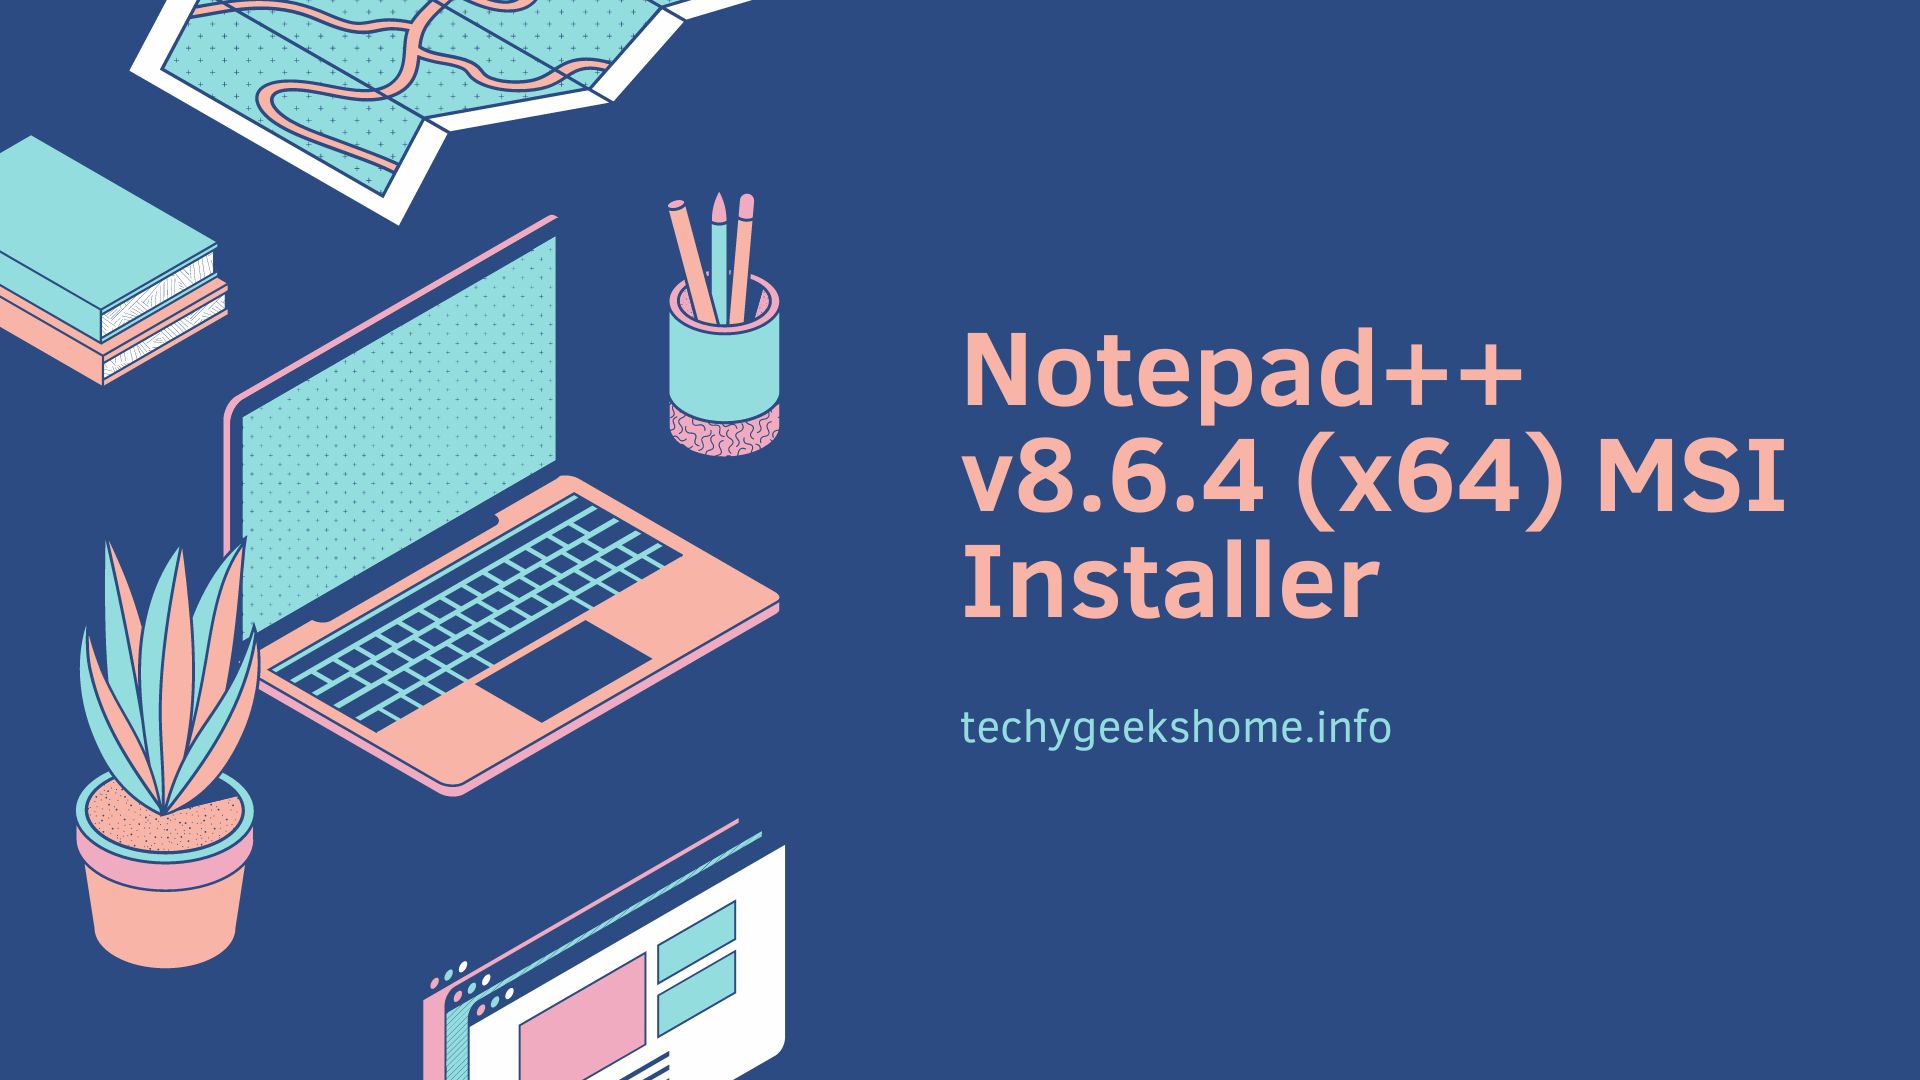 Notepad++ v8.6.4 (x64) MSI Installer